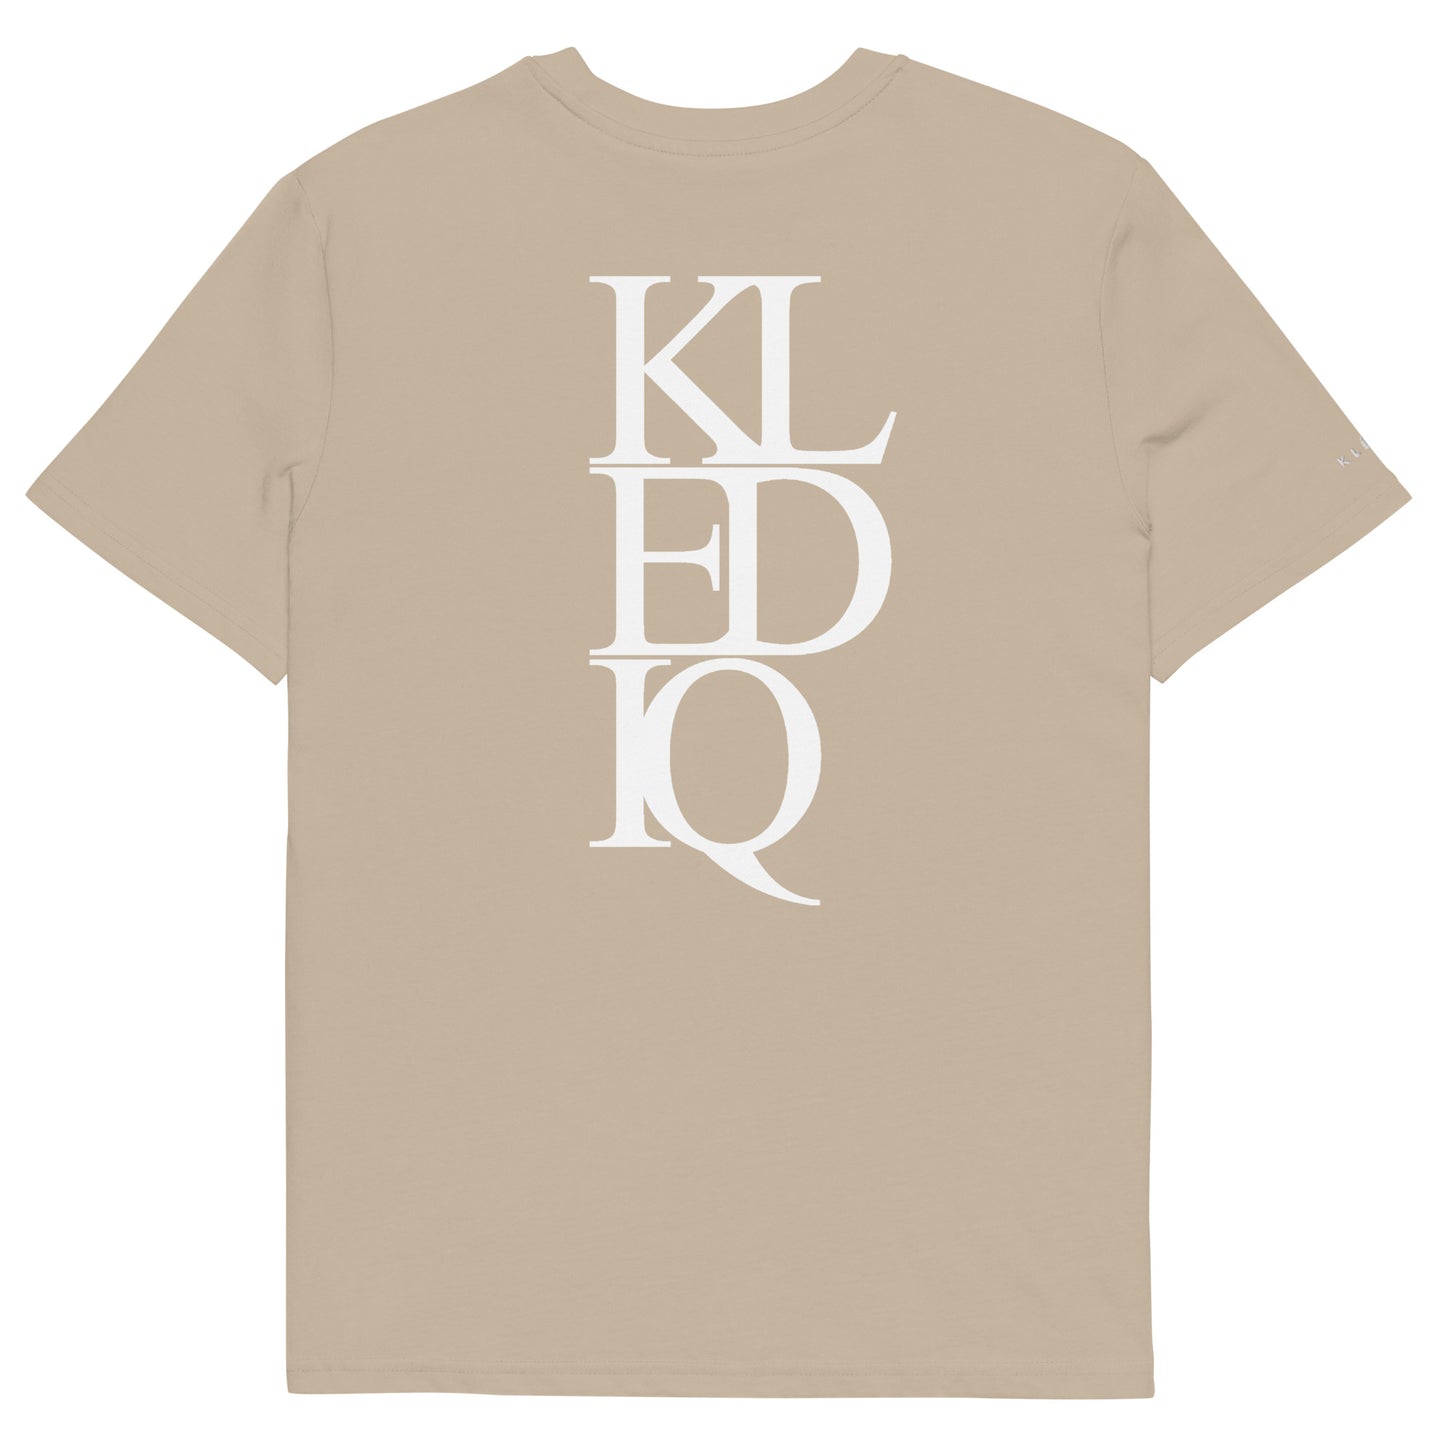 Klediq T-shirt / Desert dust